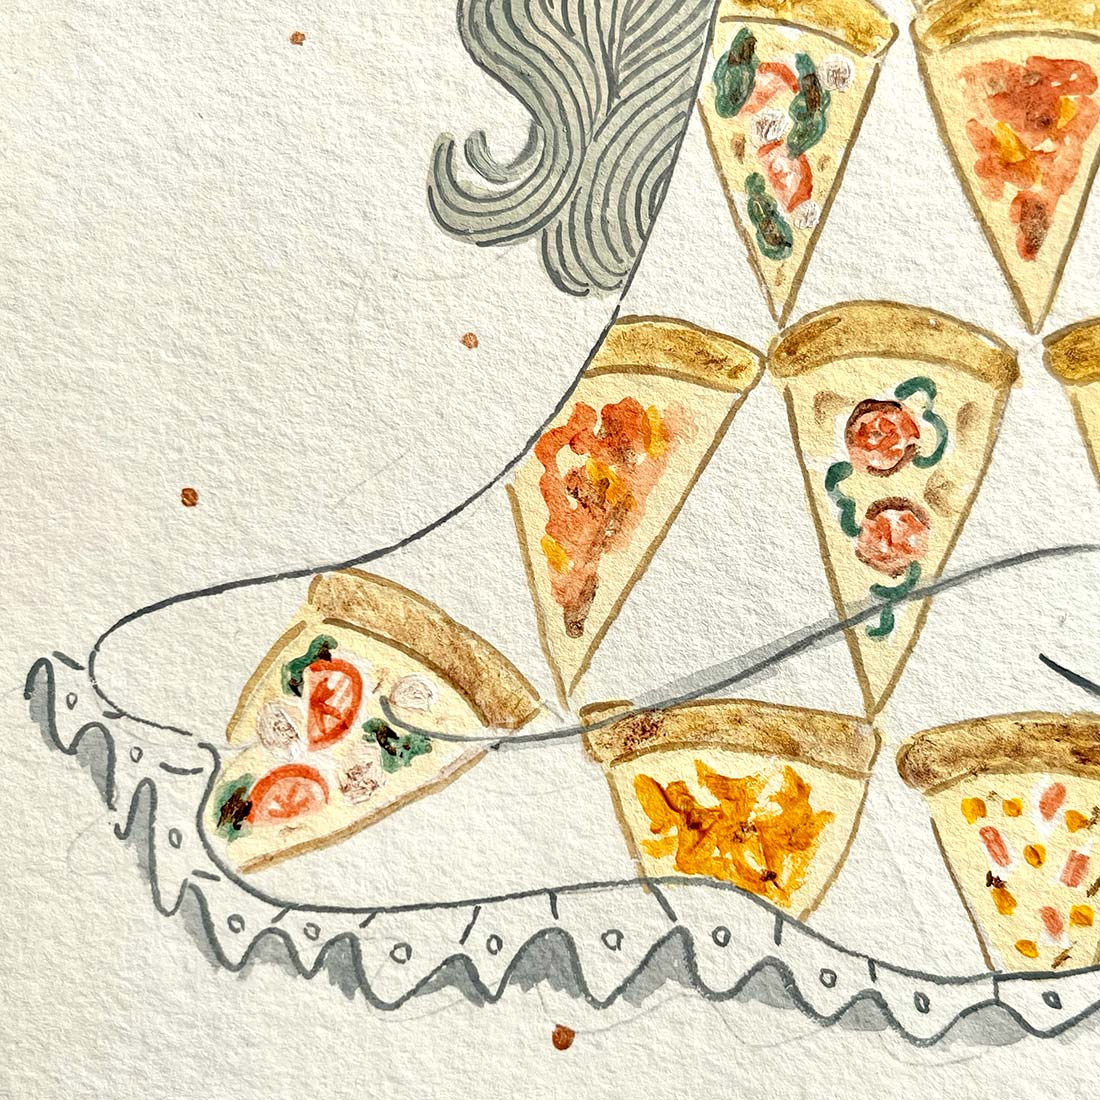 作品「私は好きでできている~pizza~」